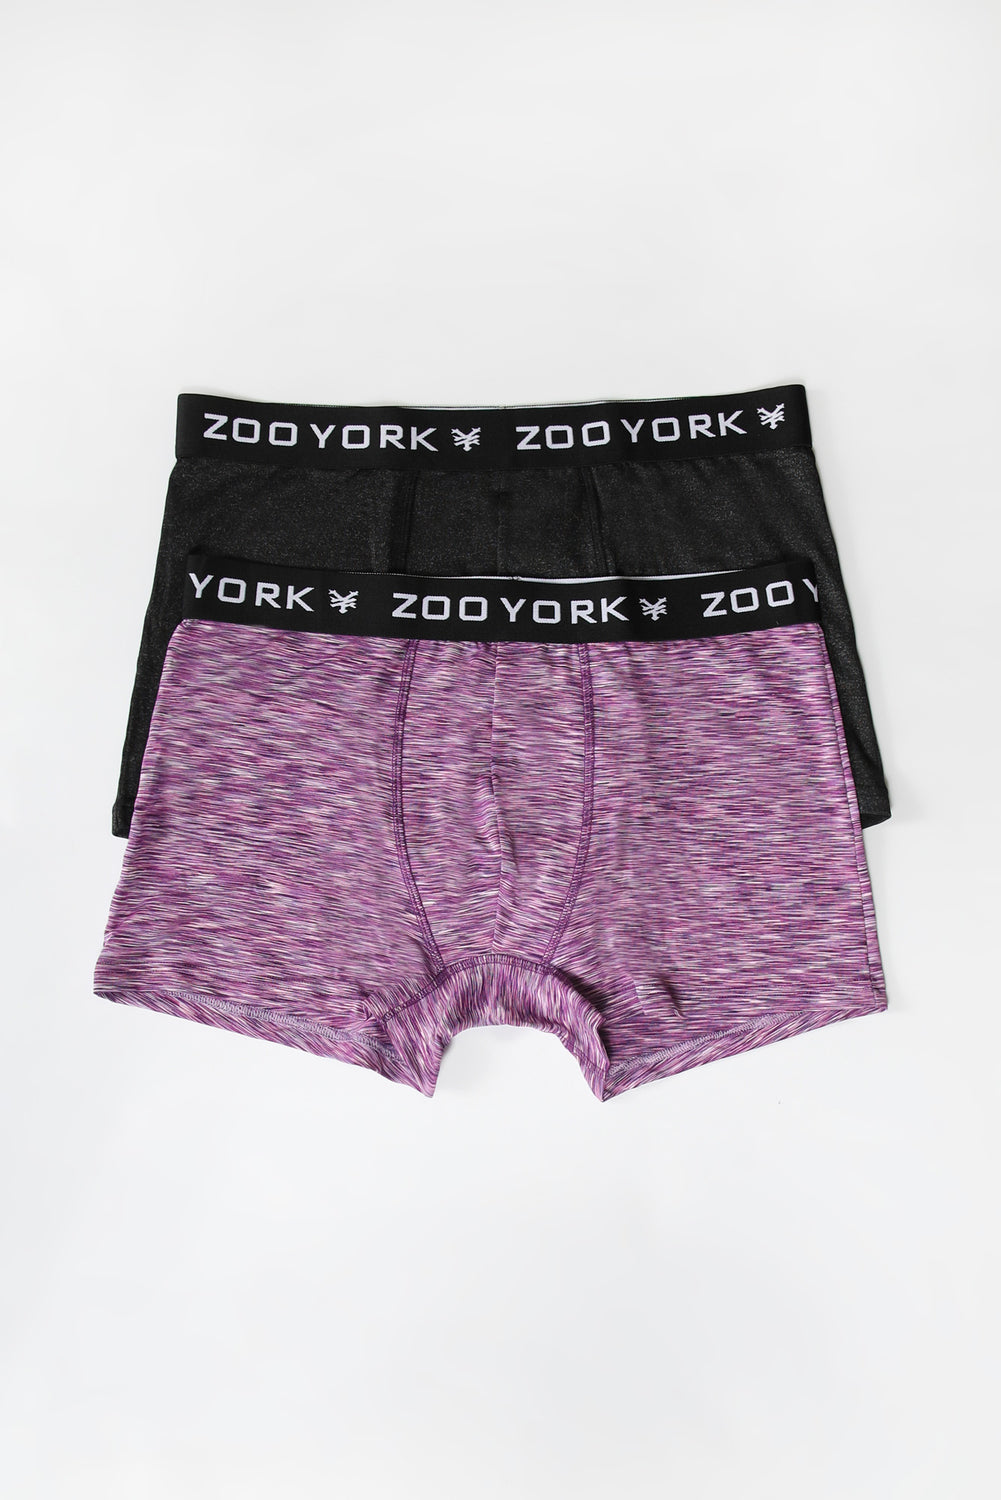 2 Paires de Boxers Space Dye Zoo York Homme Violet